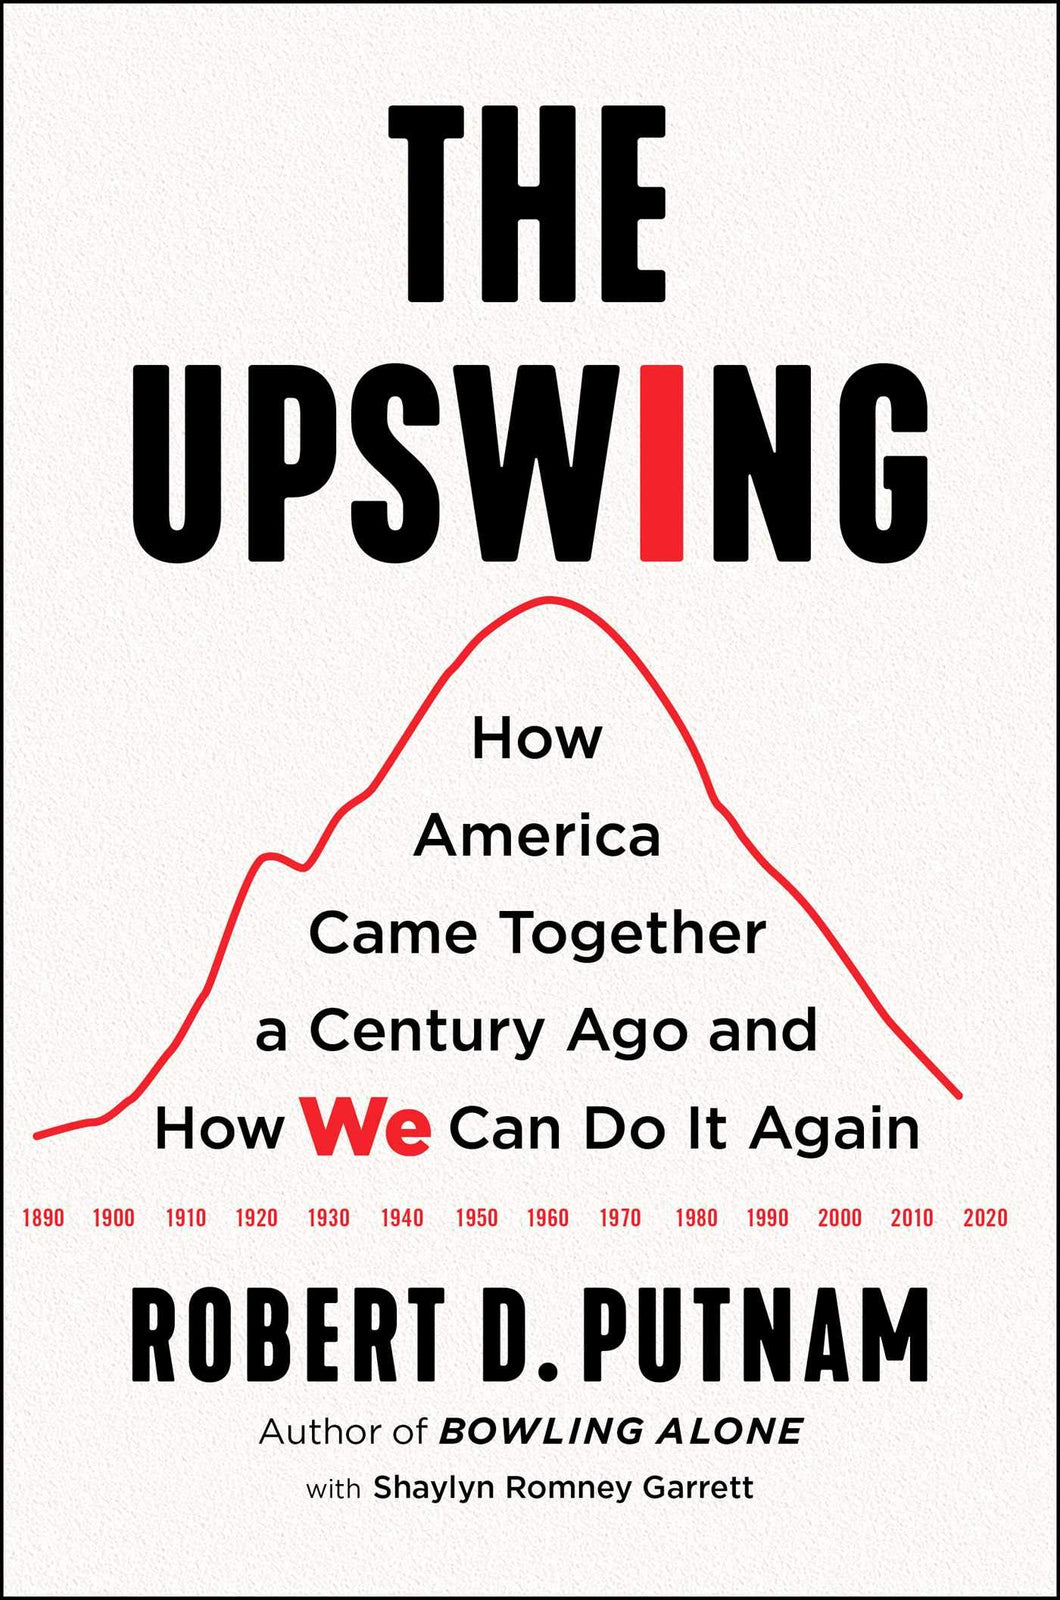 The Upswing : How America Came Together a Century Ago and How We Can Do It Again ร้านหนังสือและสิ่งของ เป็นร้านหนังสือภาษาอังกฤษหายาก และร้านกาแฟ หรือ บุ๊คคาเฟ่ ตั้งอยู่สุขุมวิท กรุงเทพ